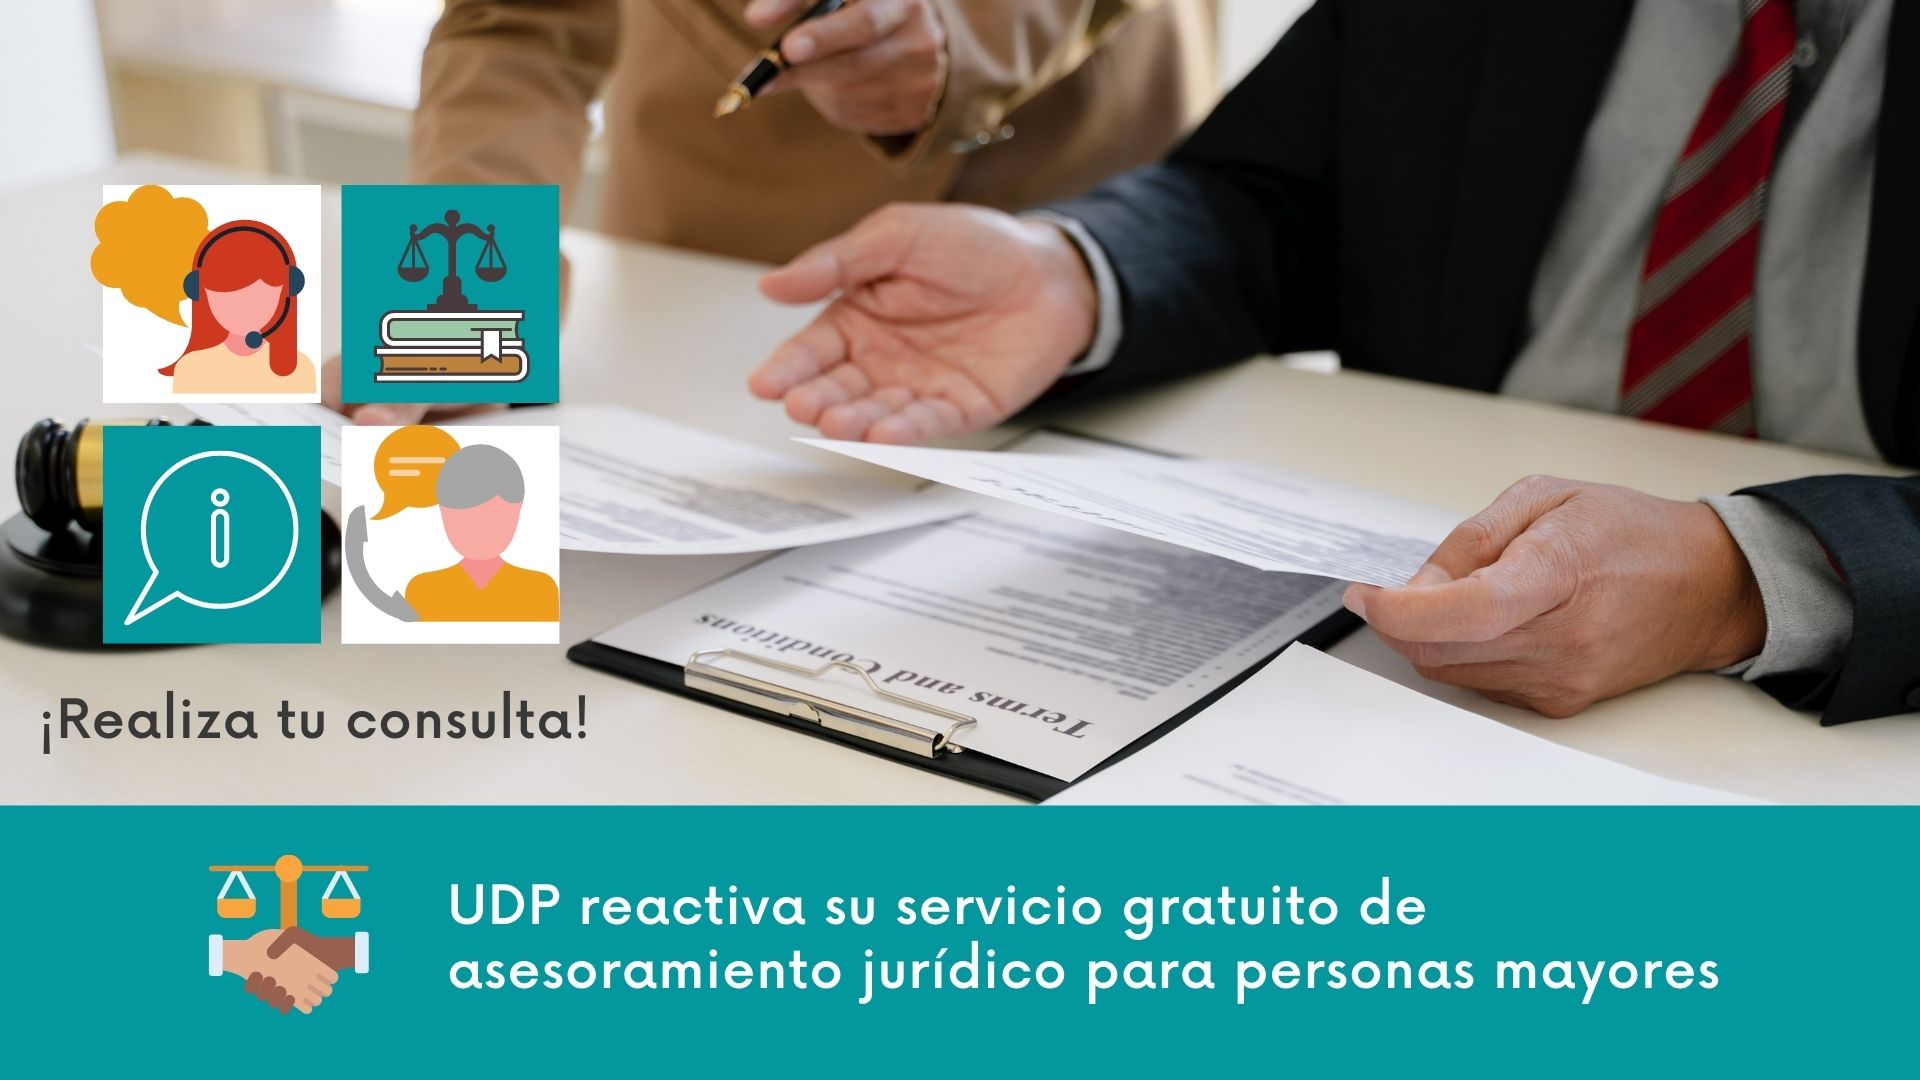 UDP reactiva su servicio gratuito de asesoramiento jurídico para personas mayores